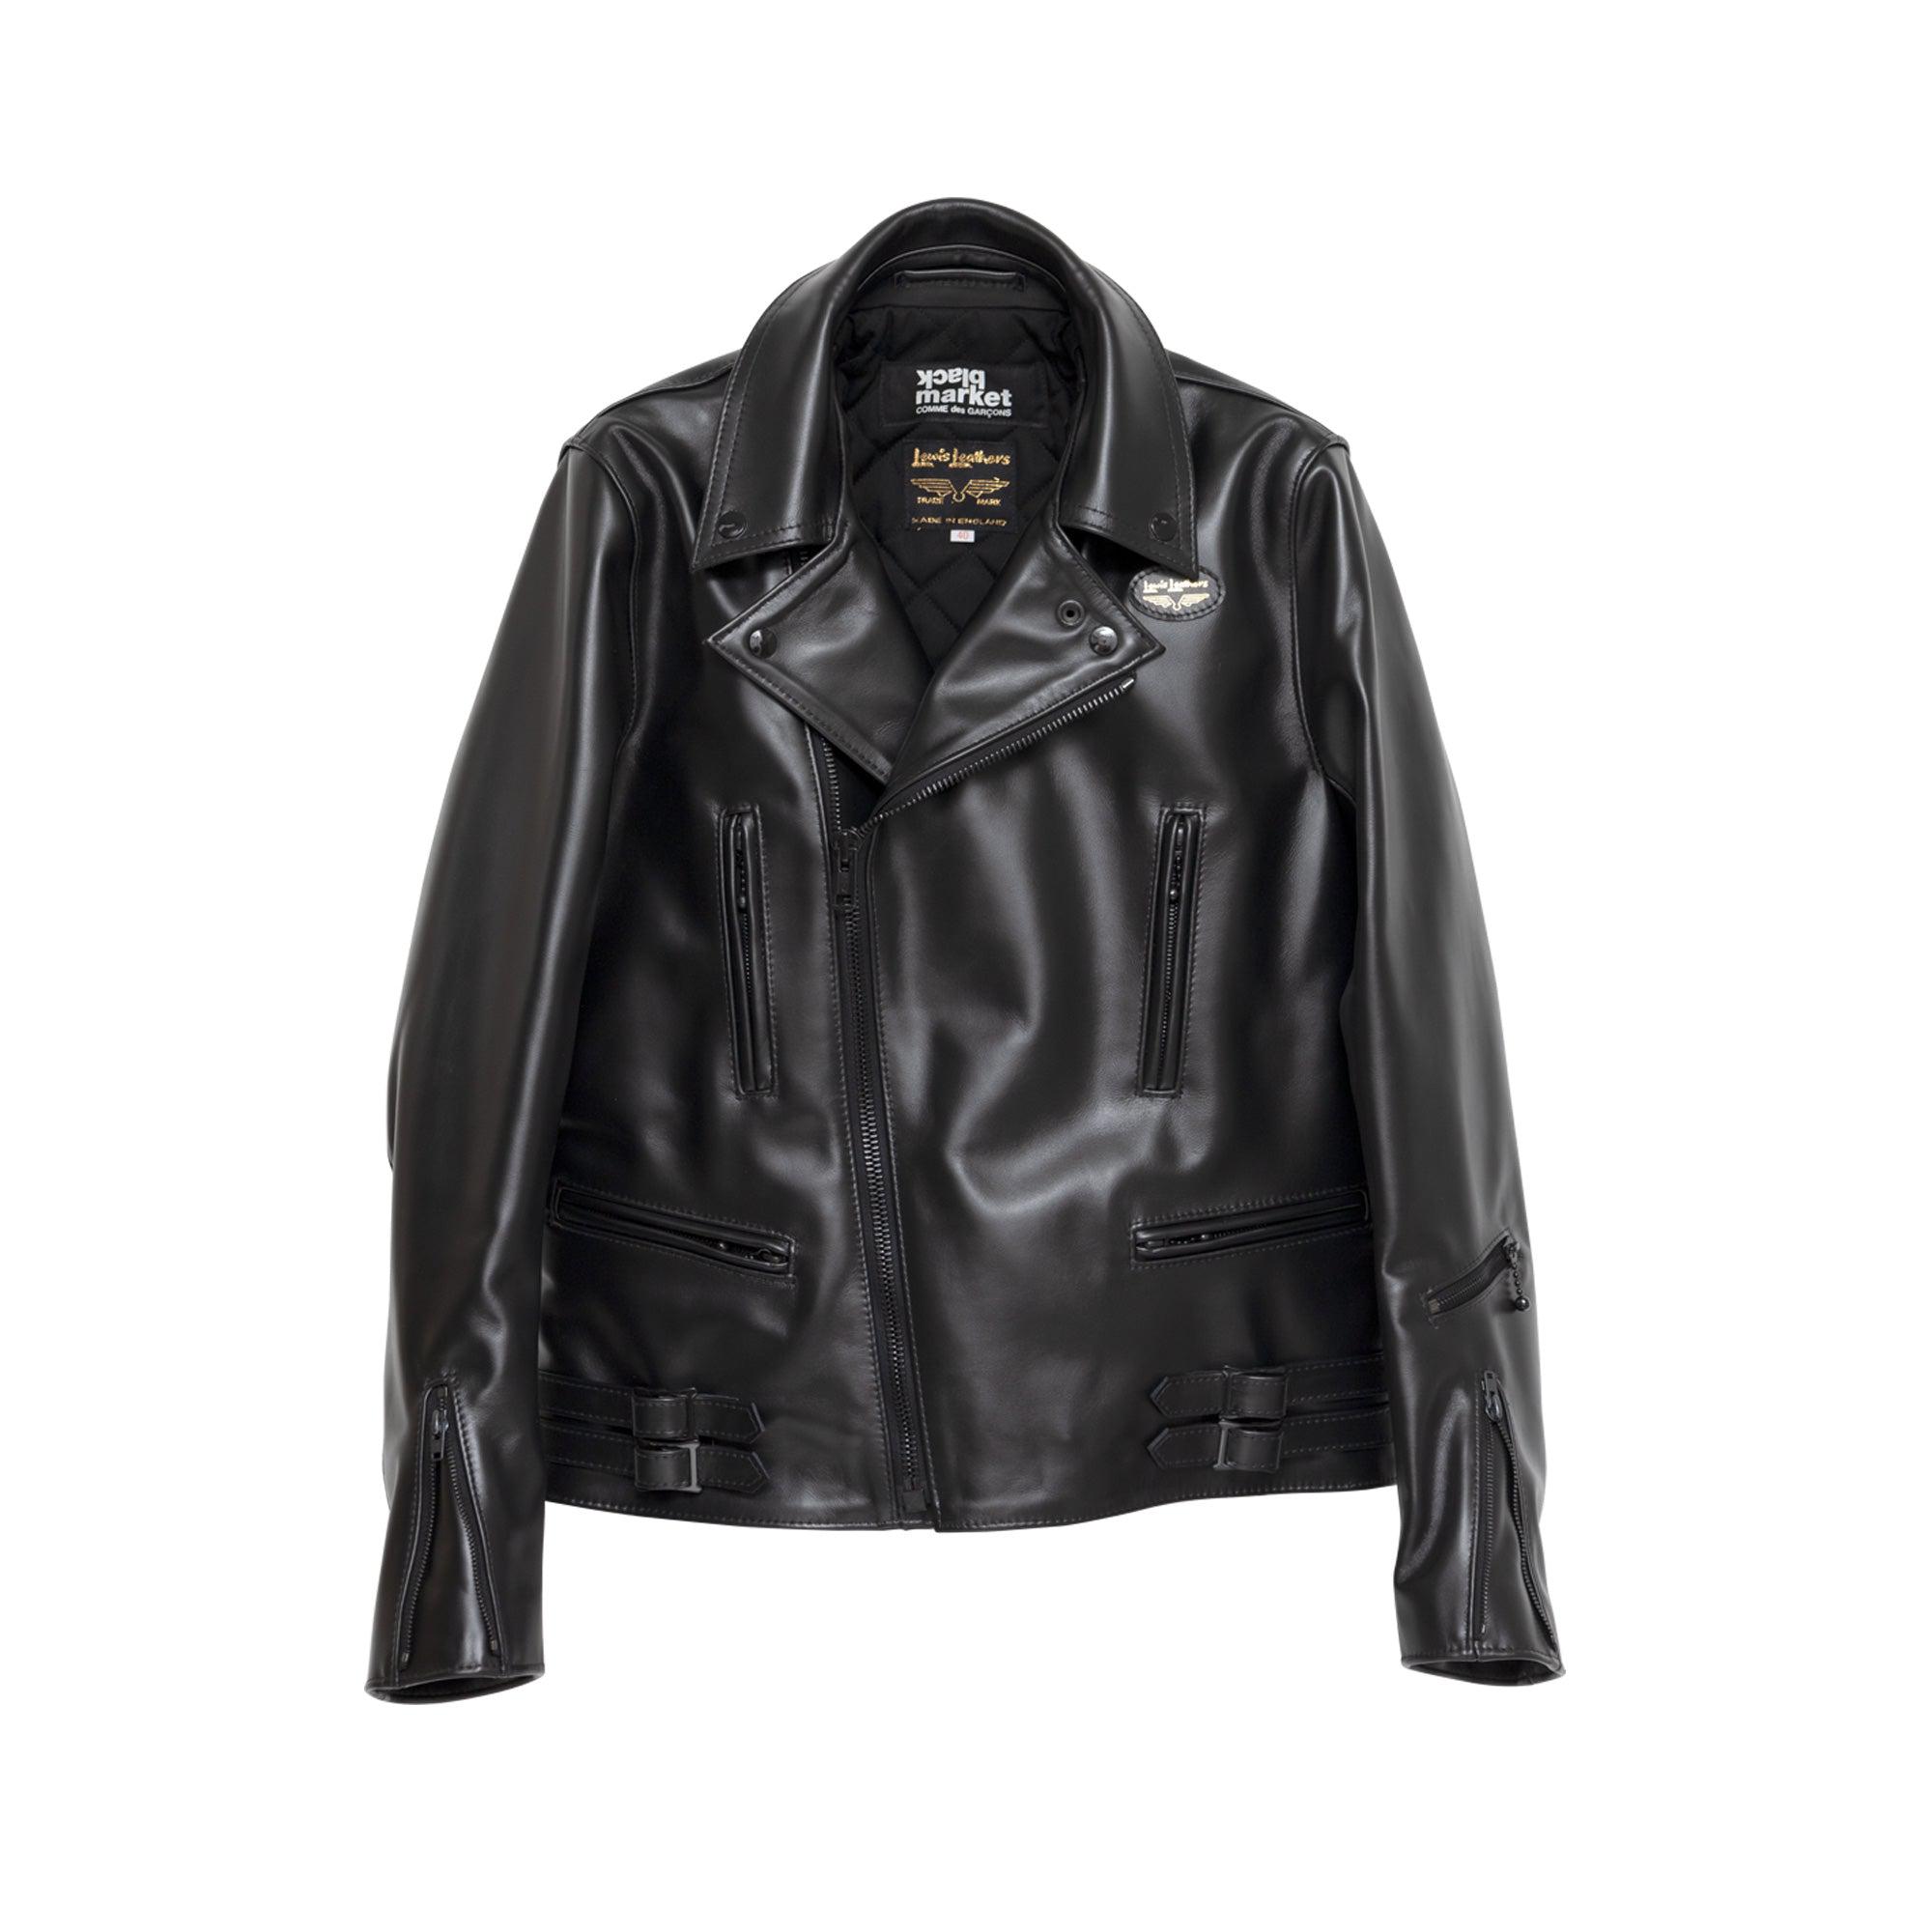 Comme des Garçons Black Market x Lewis Leathers Jacket (Black) by BLACK MARKET